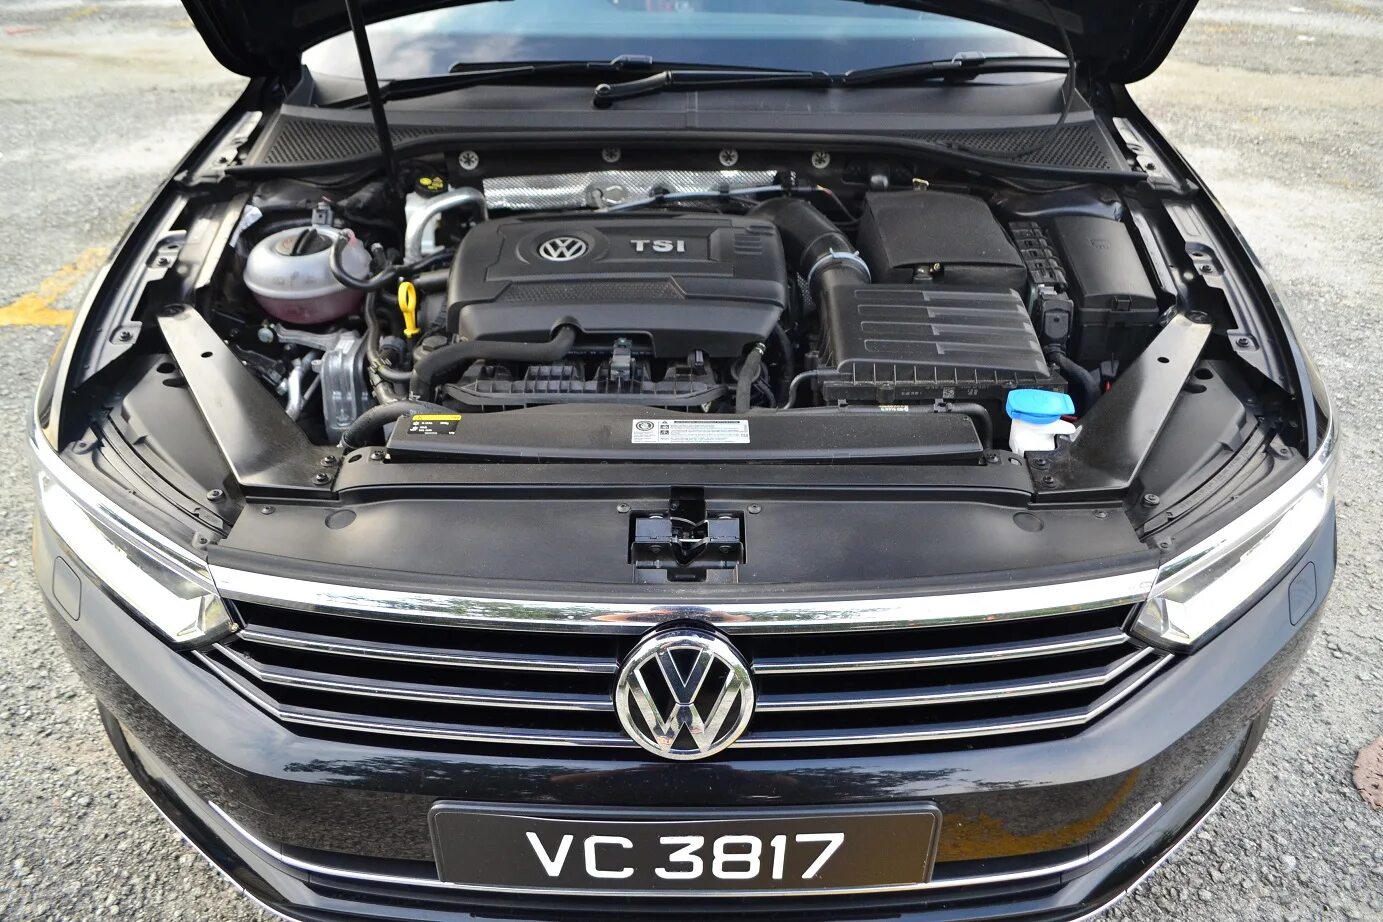 Volkswagen двигатели отзывы. VW Passat b8 двигатель. Volkswagen Passat b8 1.8 TSI. Passat b8 двигатель 1,8. Фольксваген Пассат ТСИ 1.8.